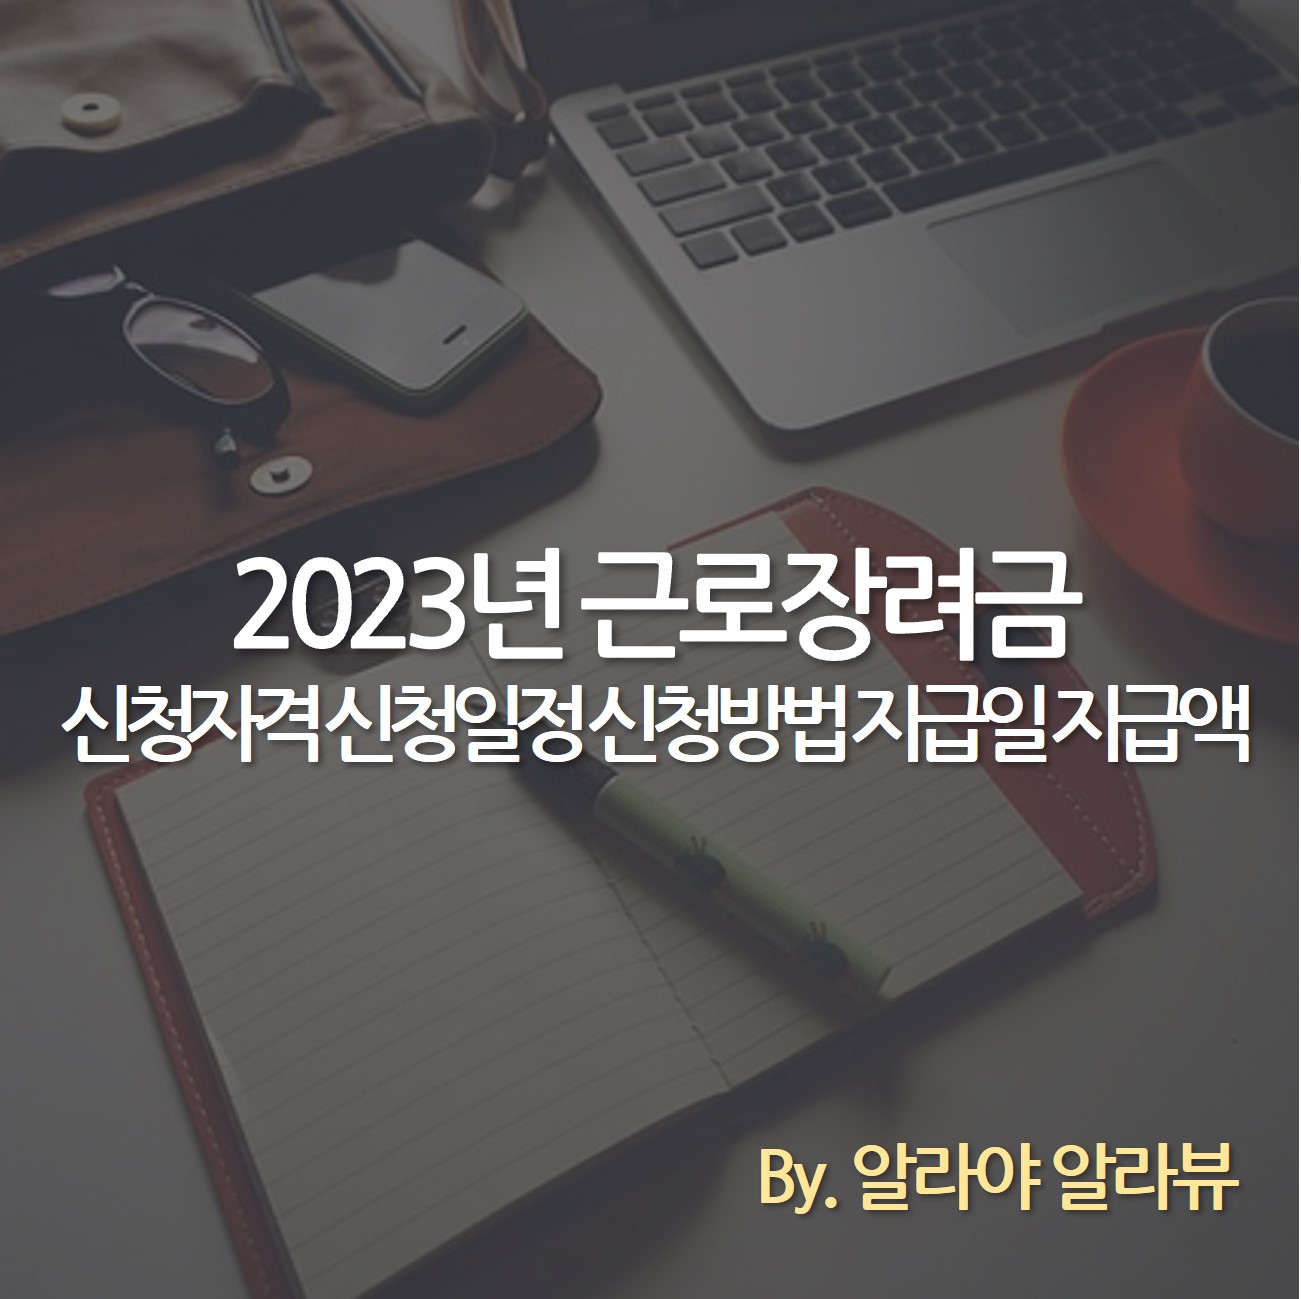 2023년 근로장려금 신청자격 신청일정 신청방법 지급일 지급액